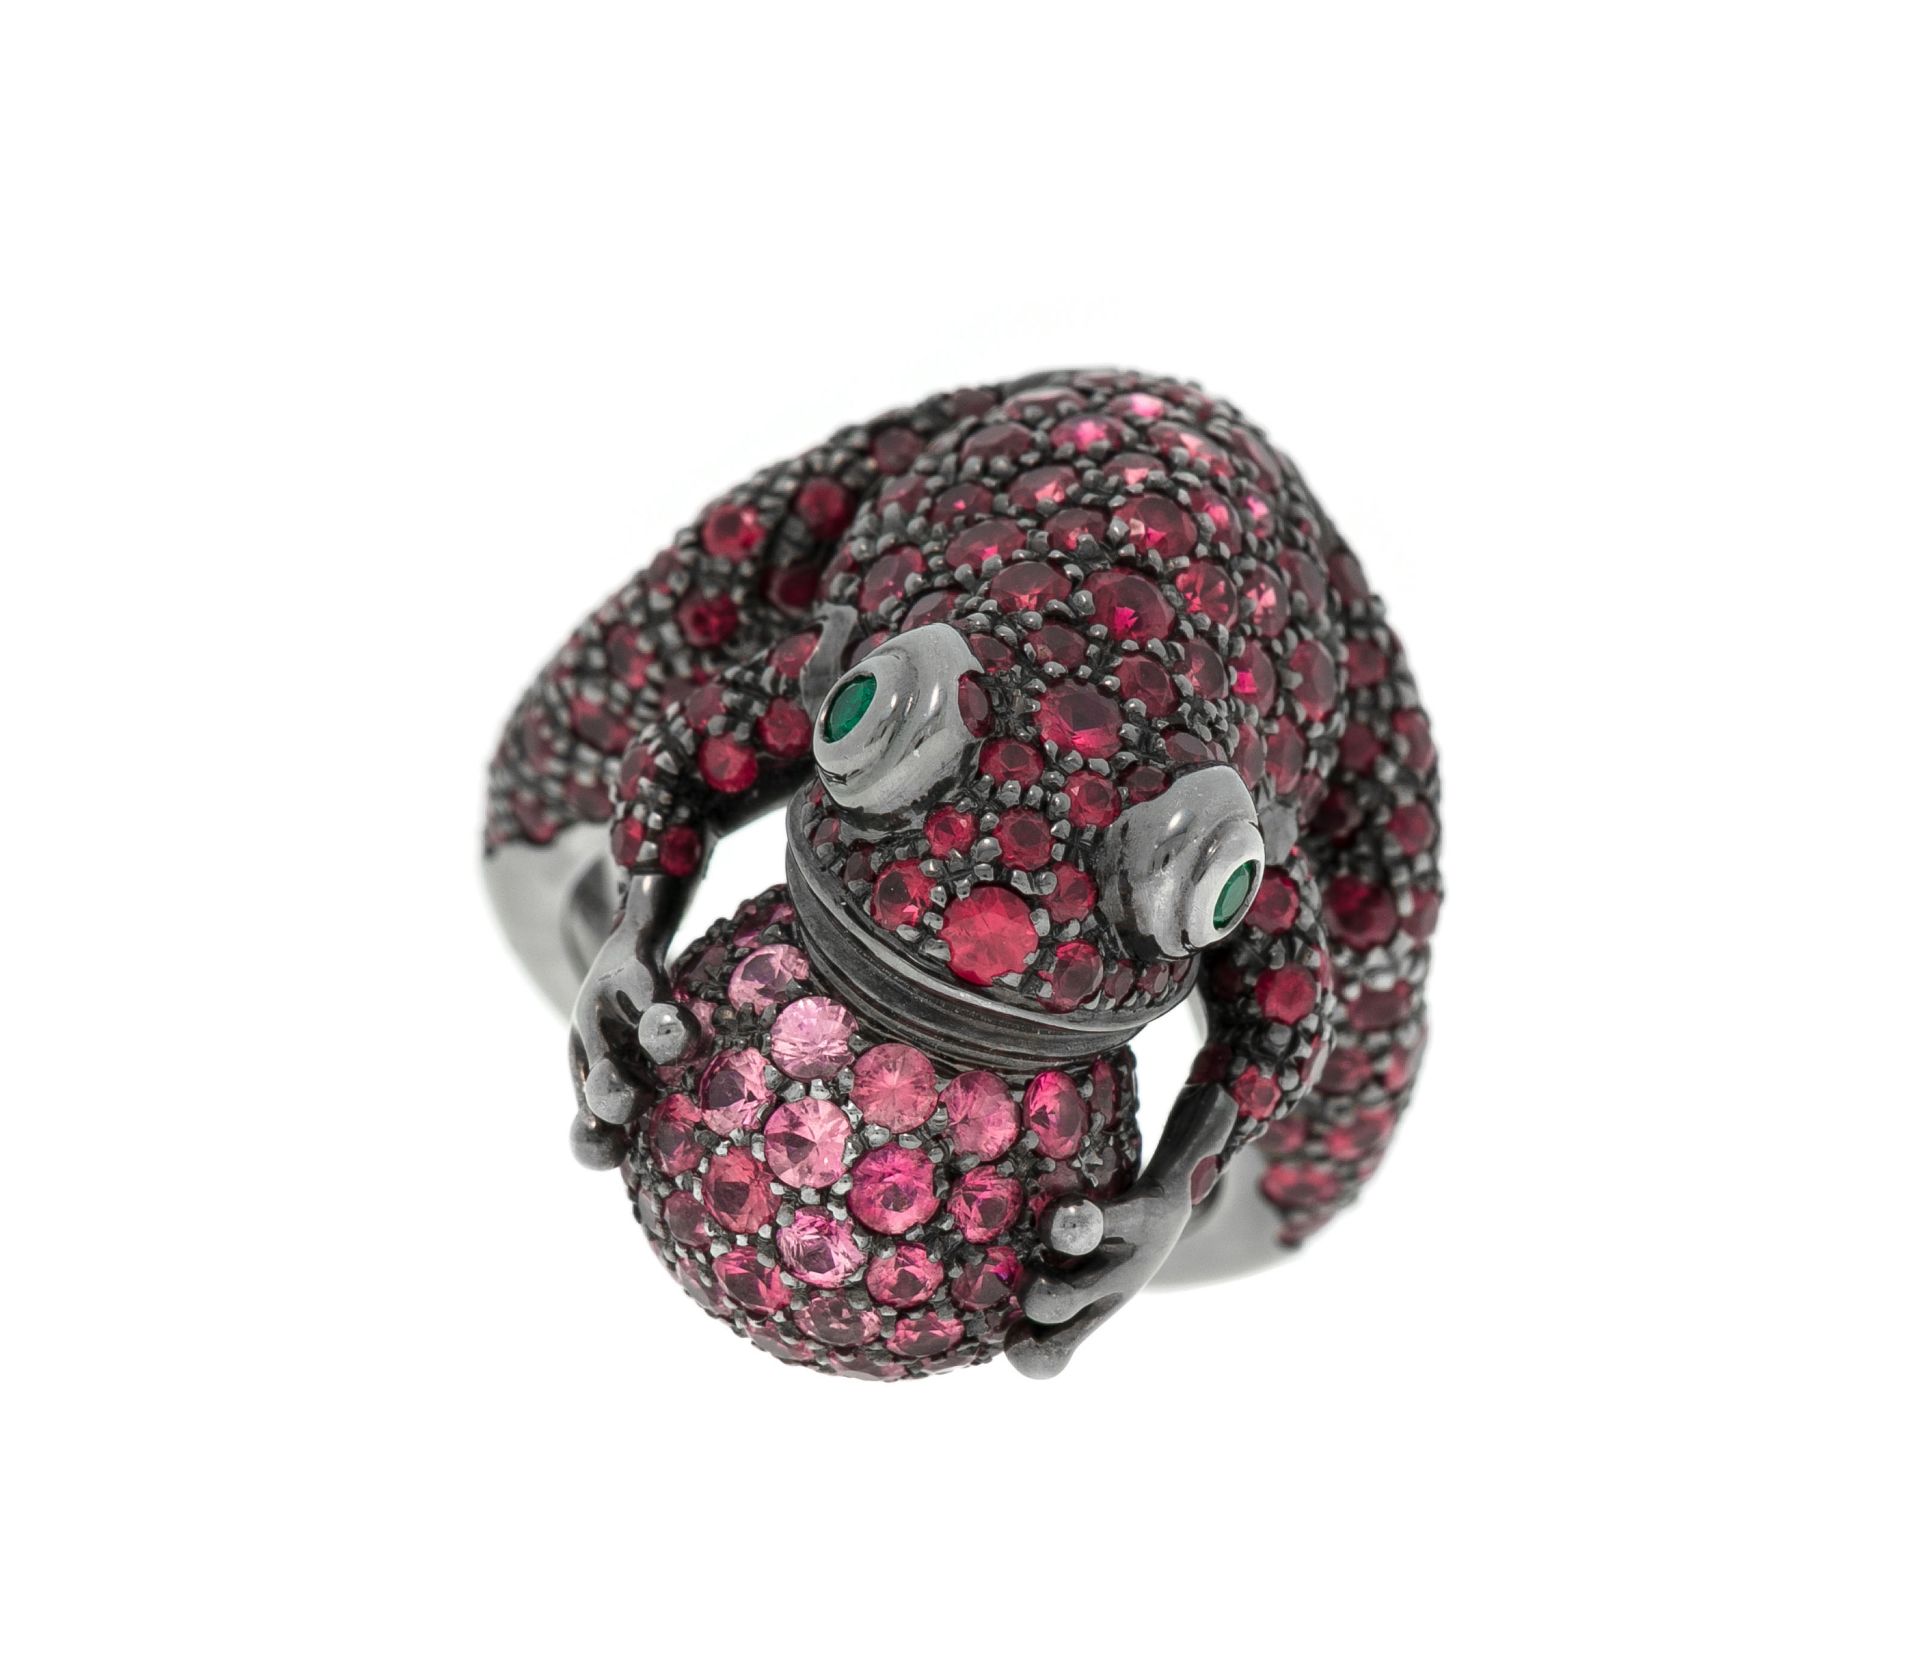 Boucheron, bague figurant une grenouille coassant en or 750 noirci entièrement pavée de saphirs rose - Image 2 of 5